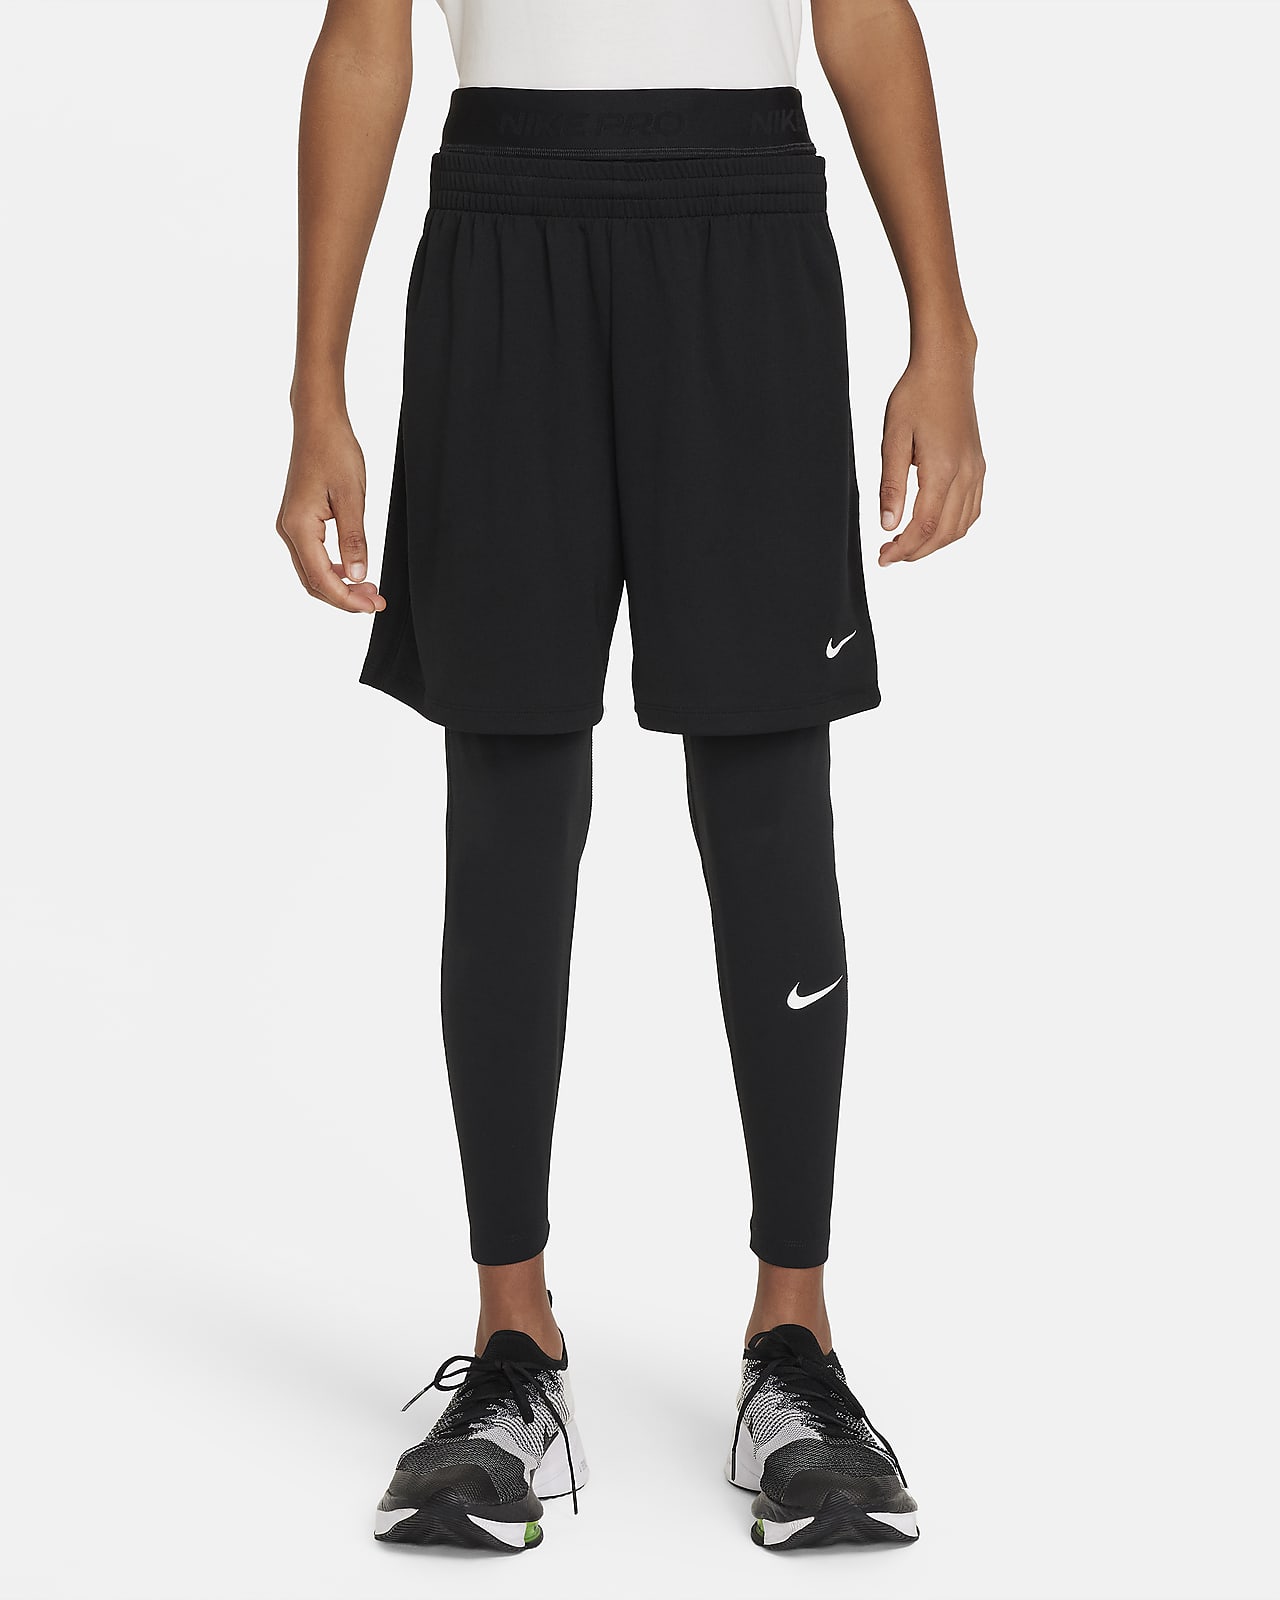 Legging Nike Pro Dri-FIT pour ado (garçon)